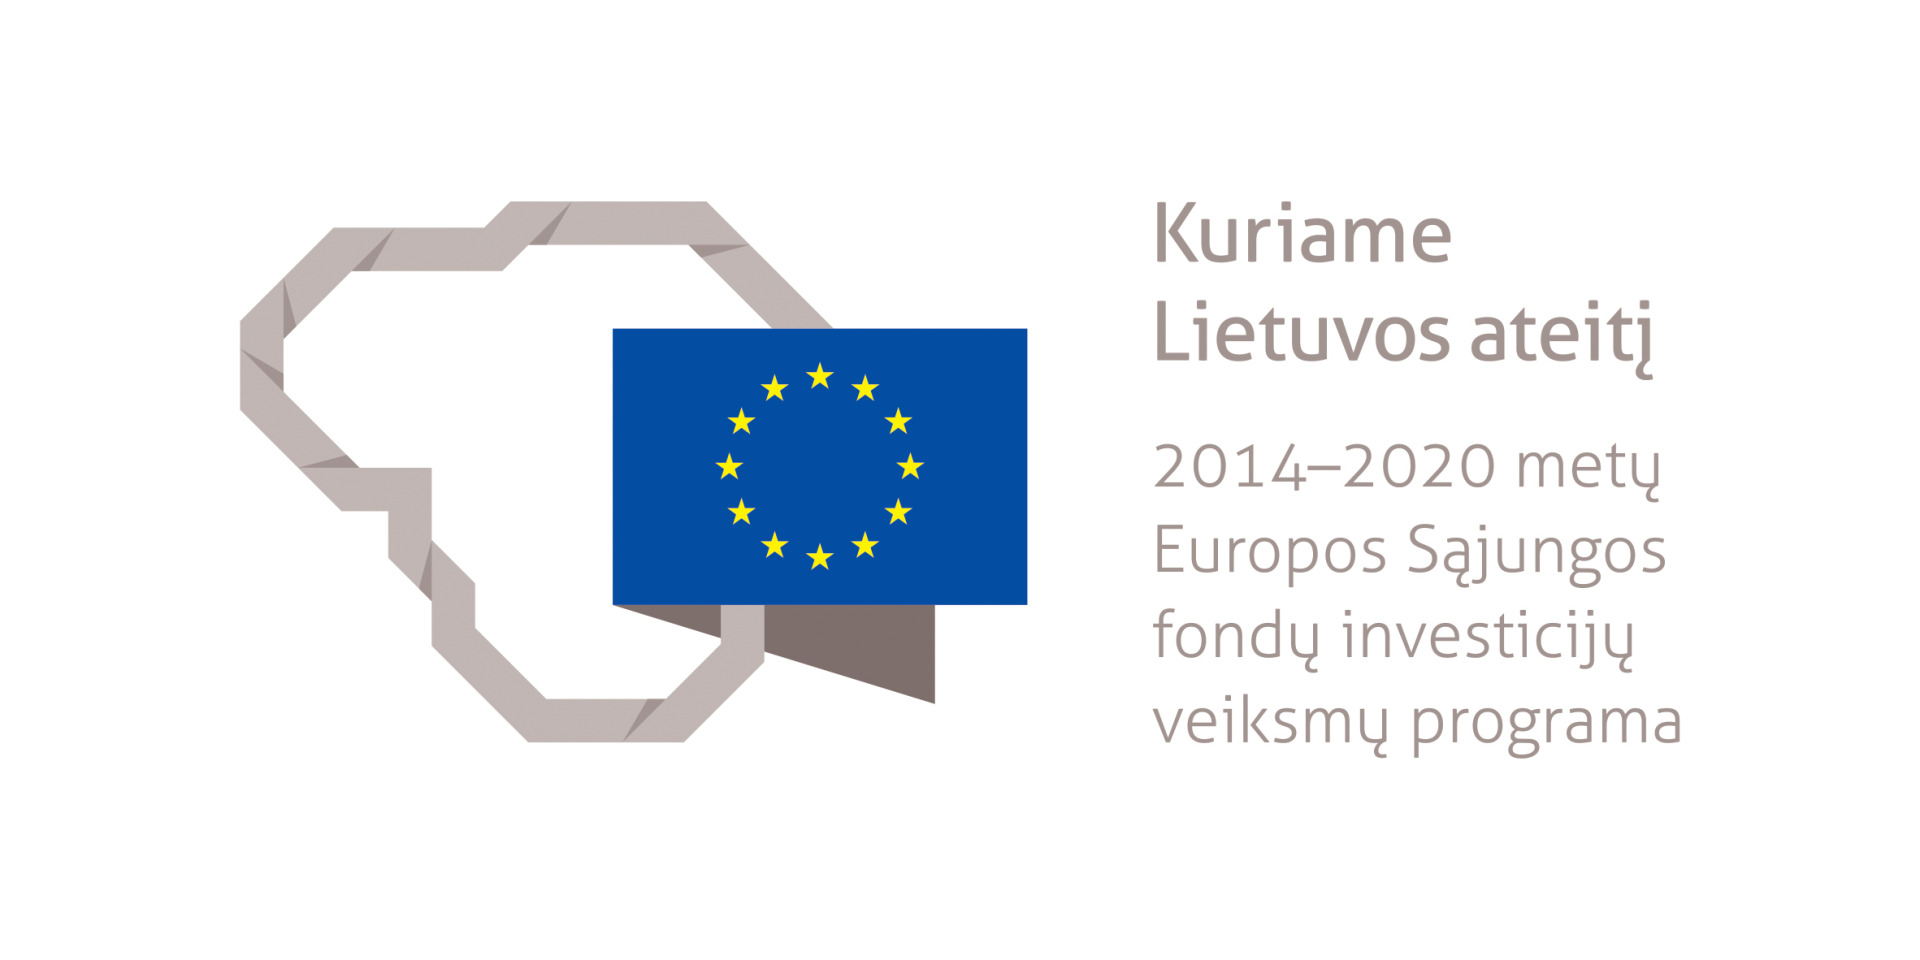 ES logotpas: Kuriame Lietuvos ateitį. 2014-2020 metų Europos Sąjungos fondų investicijų veiksmų programa 